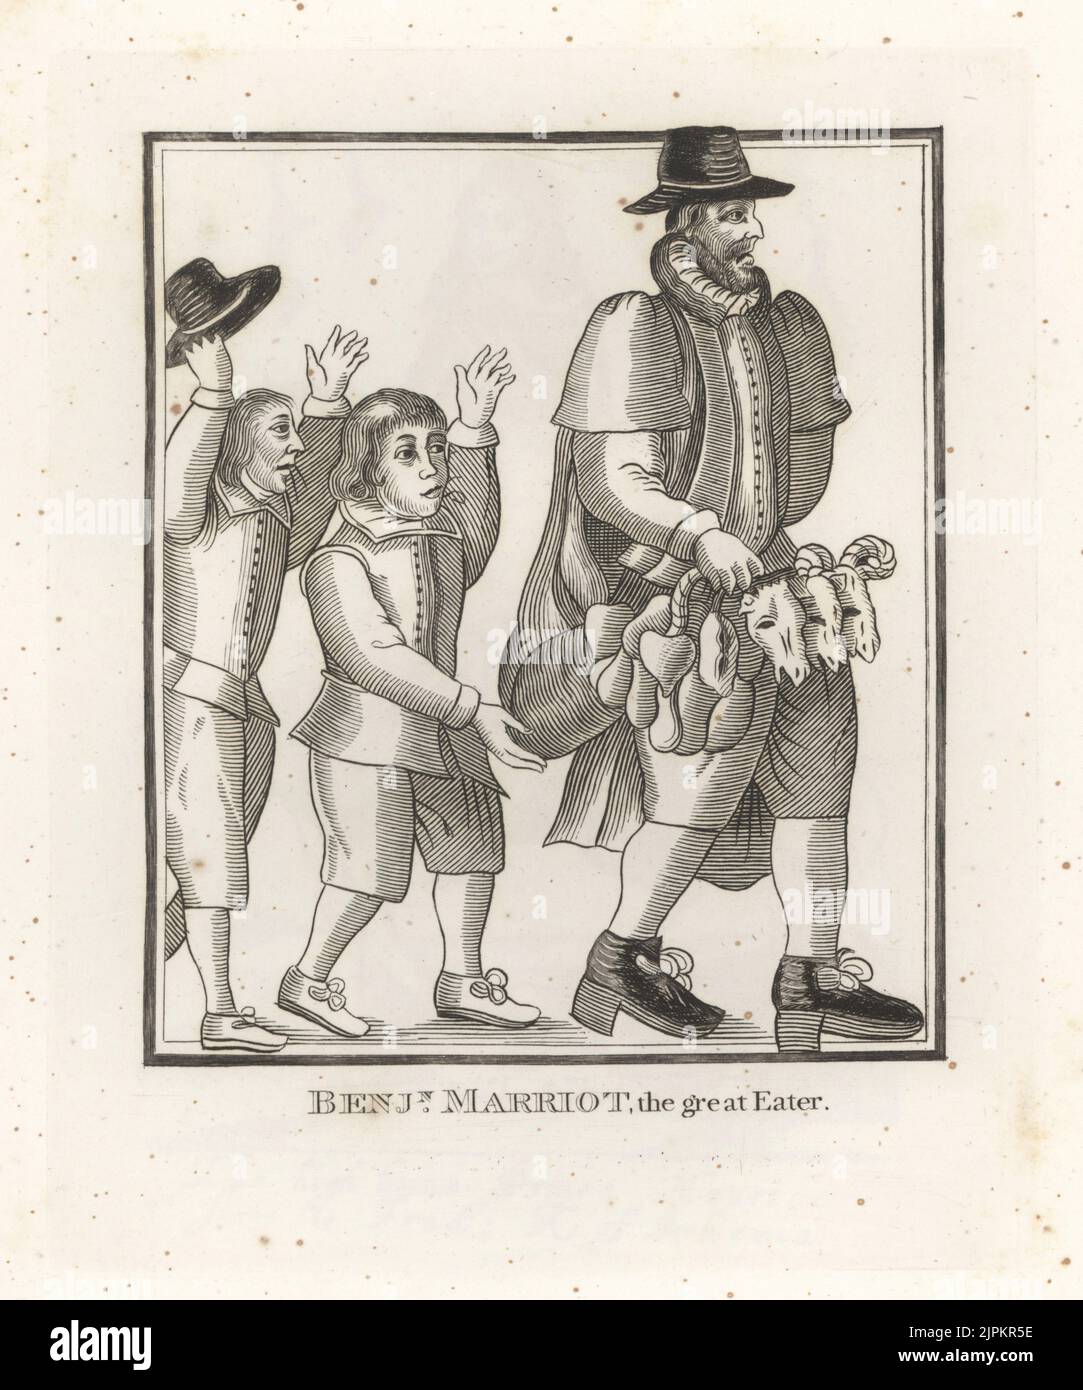 Benjamin Marriot (également John ou William Marriott), avocat anglais et fard présumé, est décédé en 1653. Un vieil homme portant trois têtes, coeurs et abats de mouton est chassé par deux garçons. D'une coupe de bois rare dans la brochure diffamatoire de George Fidge The Great Eater of Gray's Inn, 1652. Banque D'Images